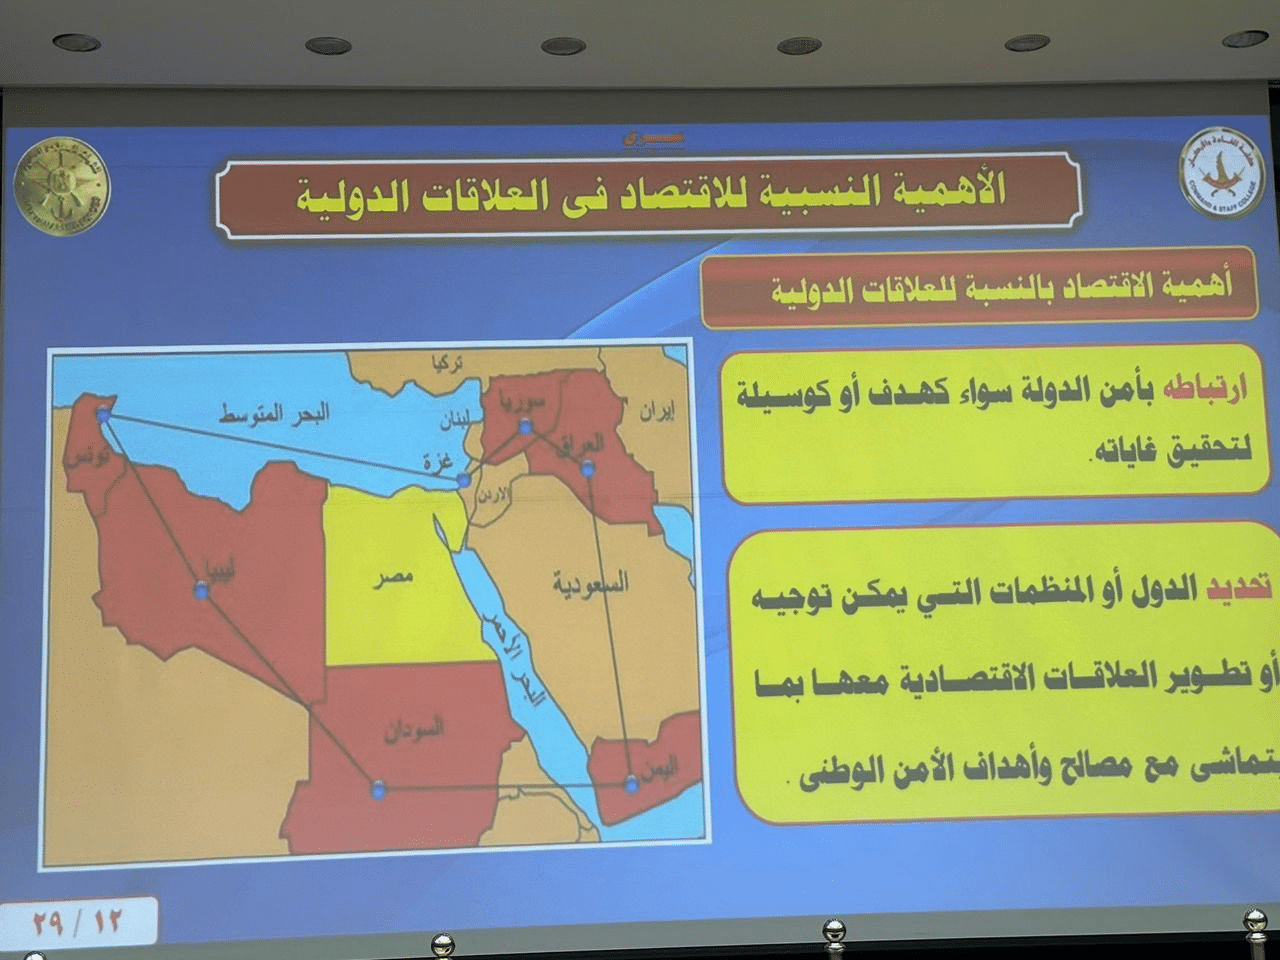 خريطة للمنطقة تُلغي “سيادة” و”وجود” الكويت على أراضيها 